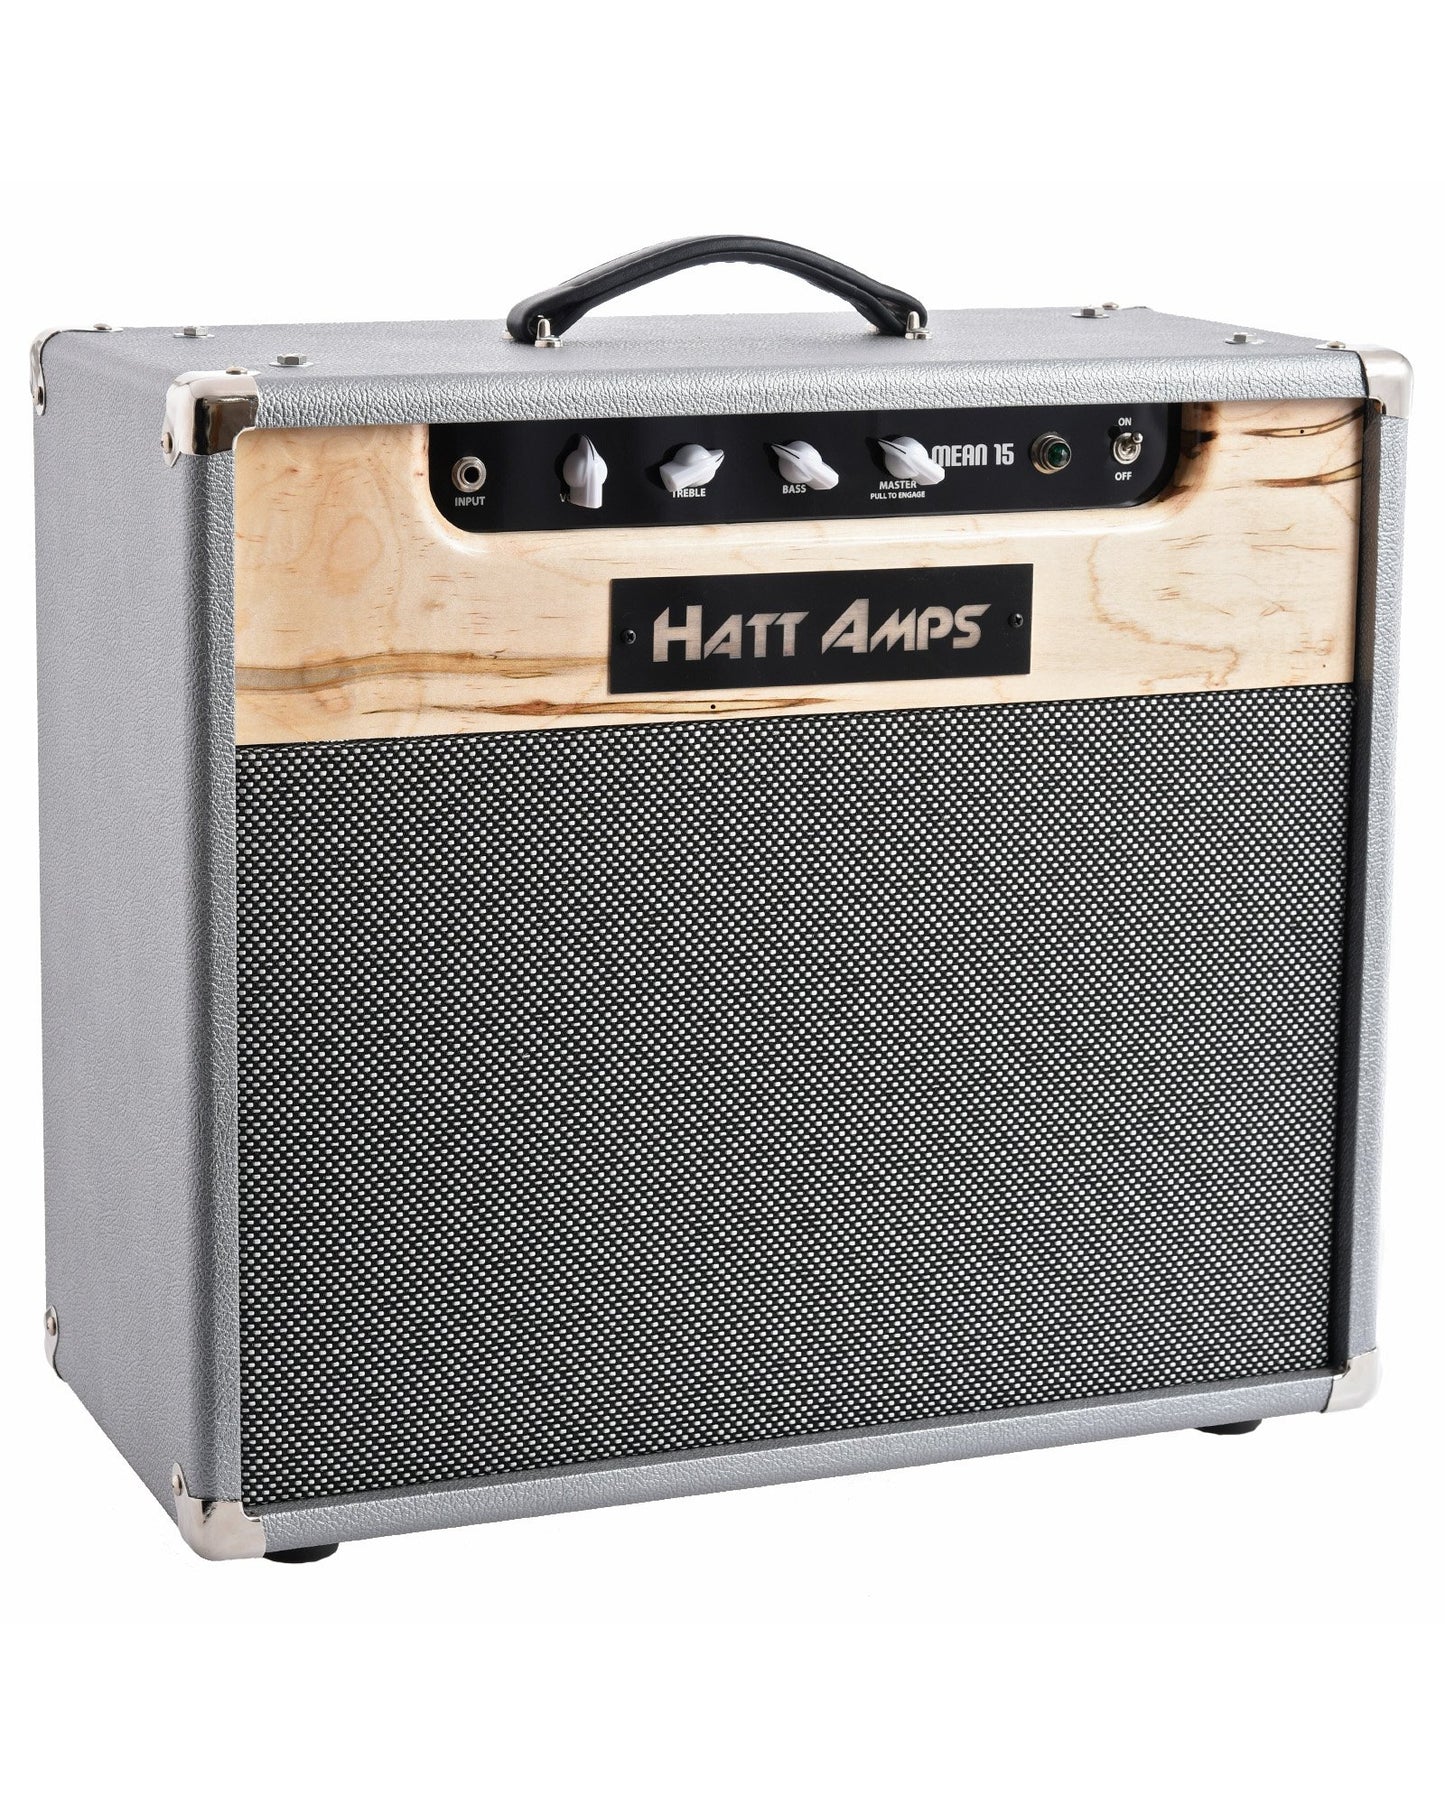 Image 1 of Hatt Amps Mean 15 1X12 Combo Amplifier - SKU# HATT3 : Product Type Amps & Amp Accessories : Elderly Instruments